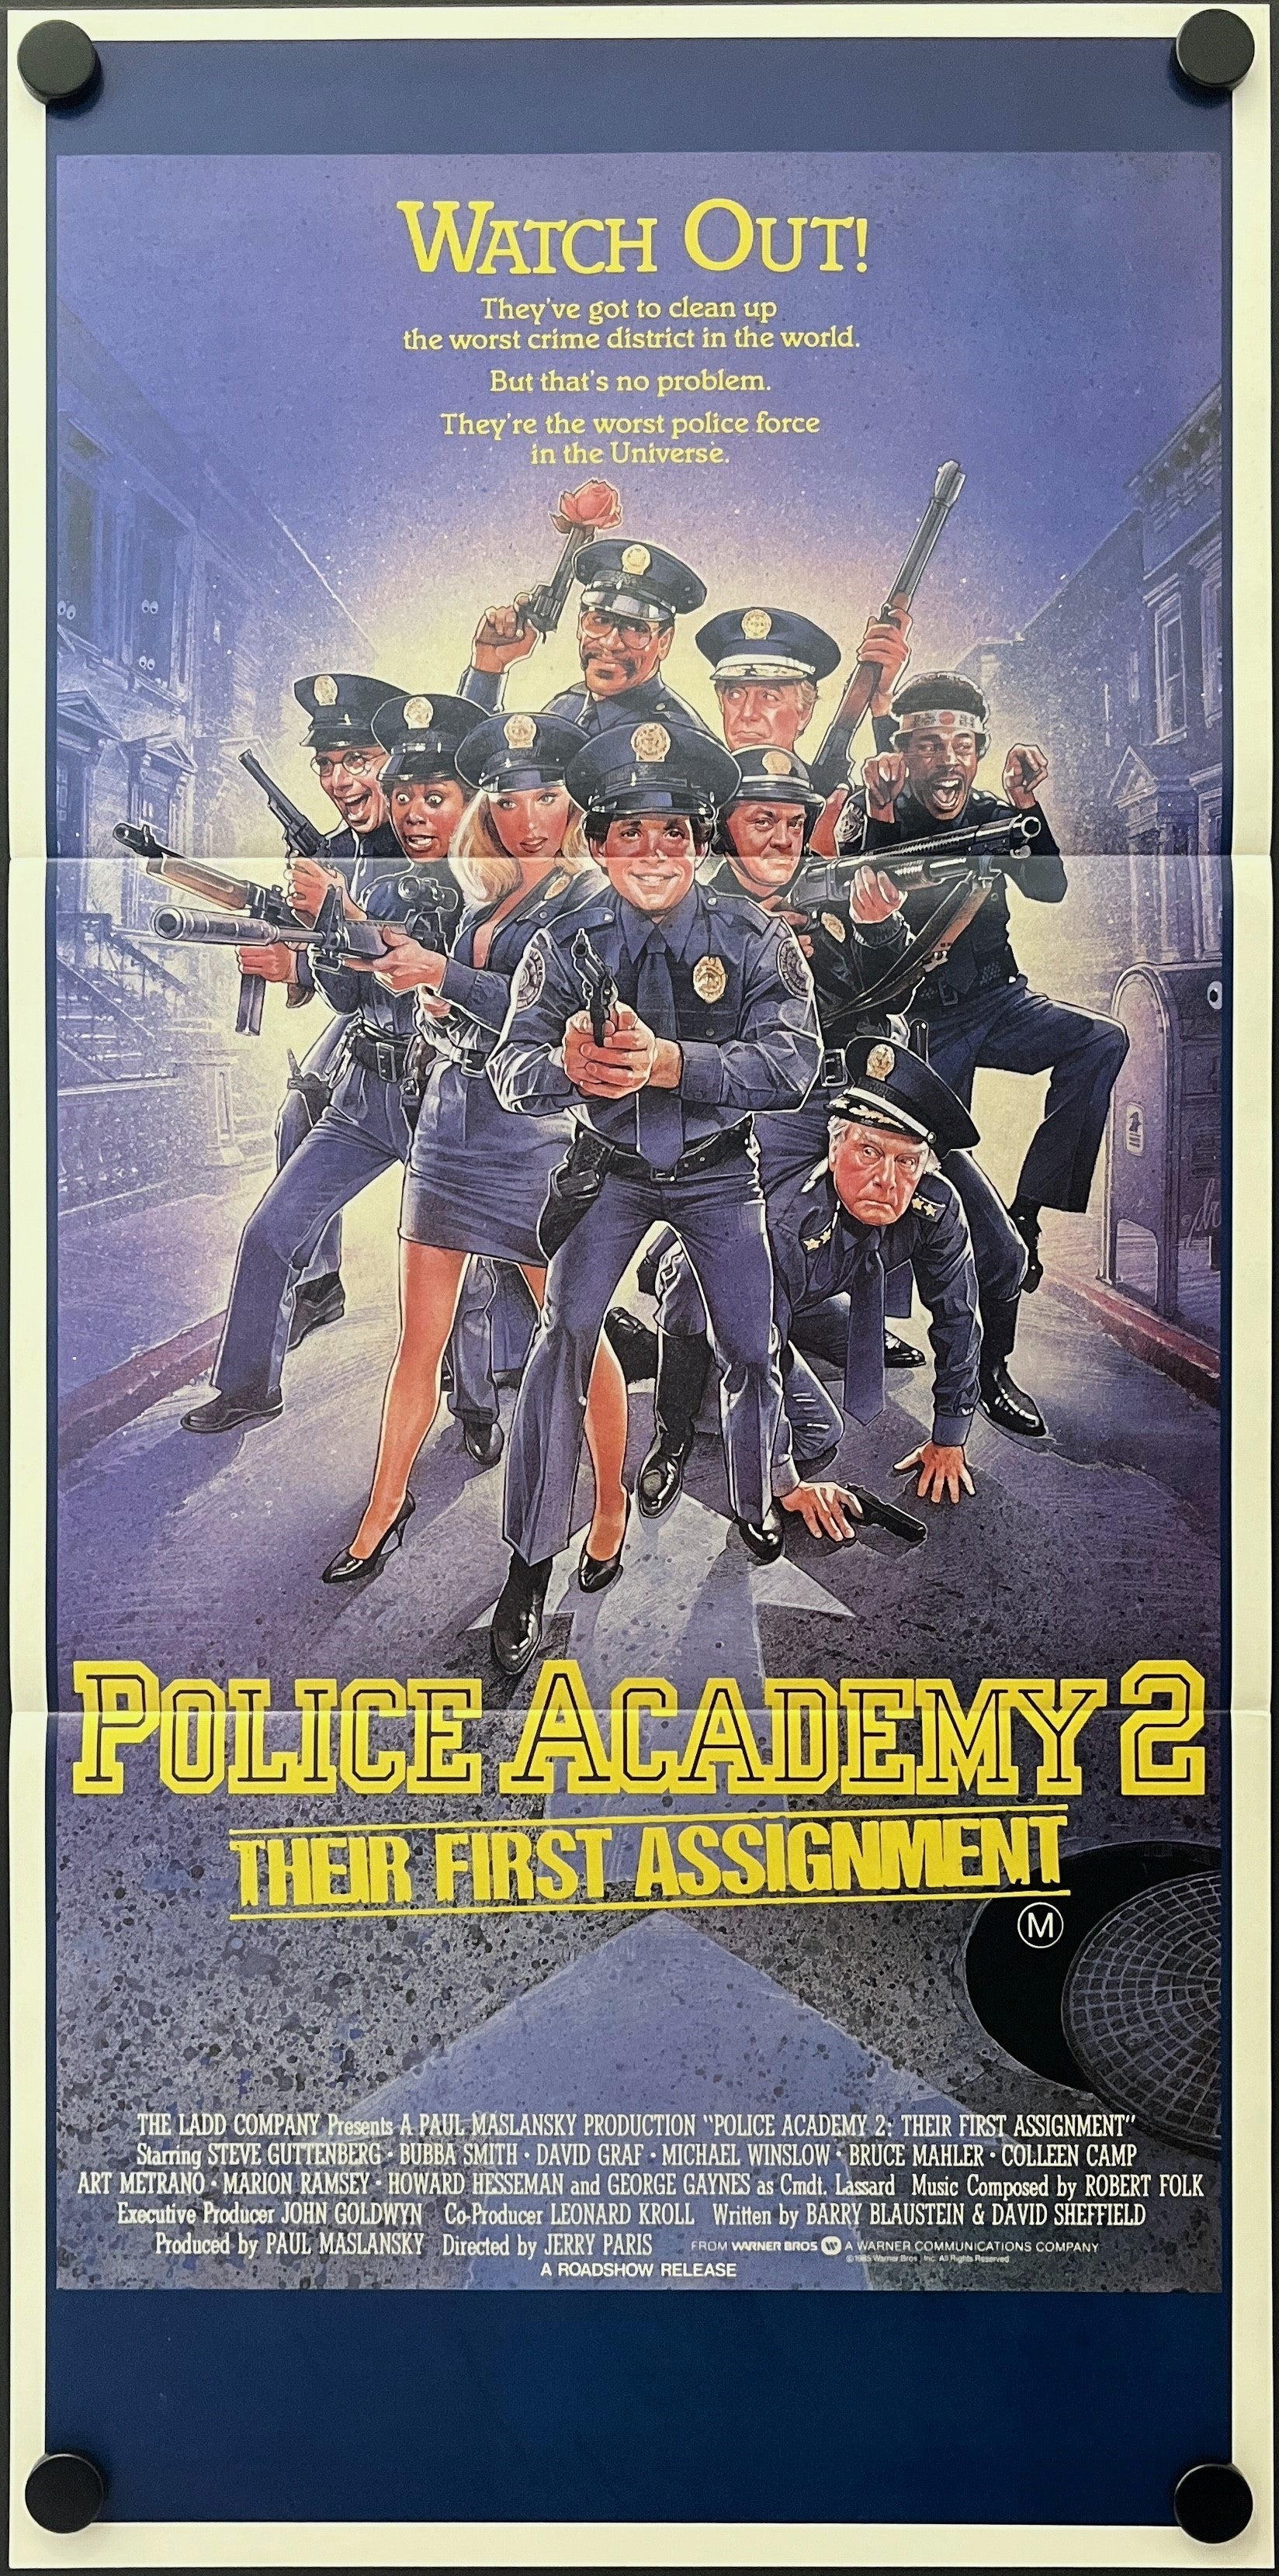 POLICE ACADEMY 2 (1985)